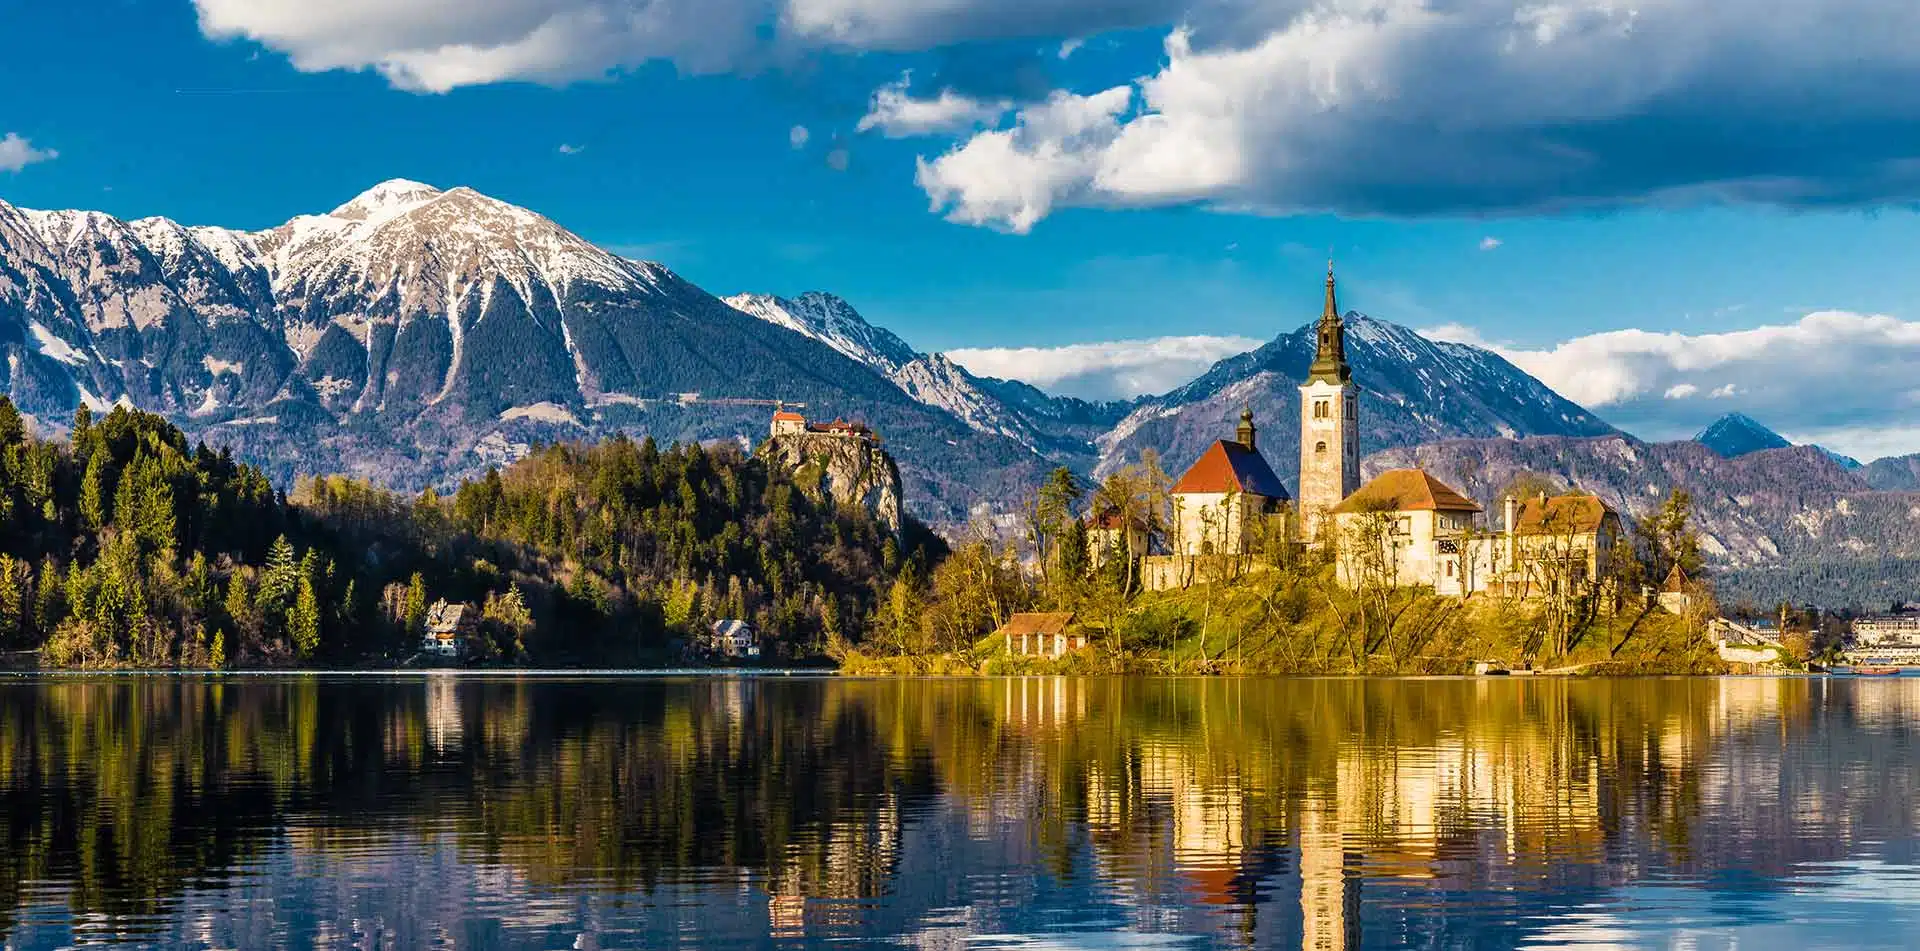 Lake Bled and Croatia